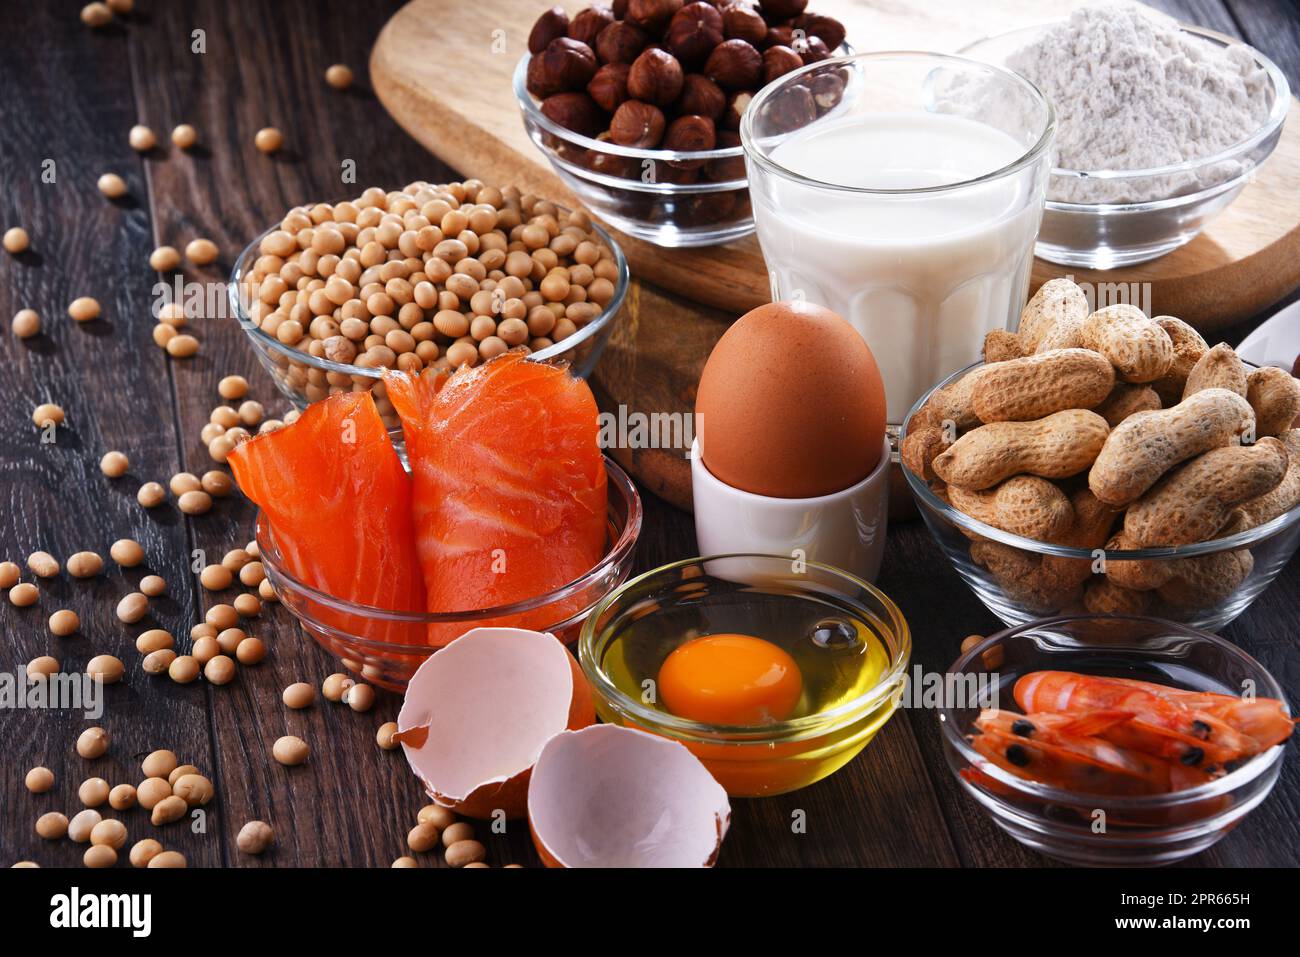 Composizione con allergeni alimentari comuni Foto Stock